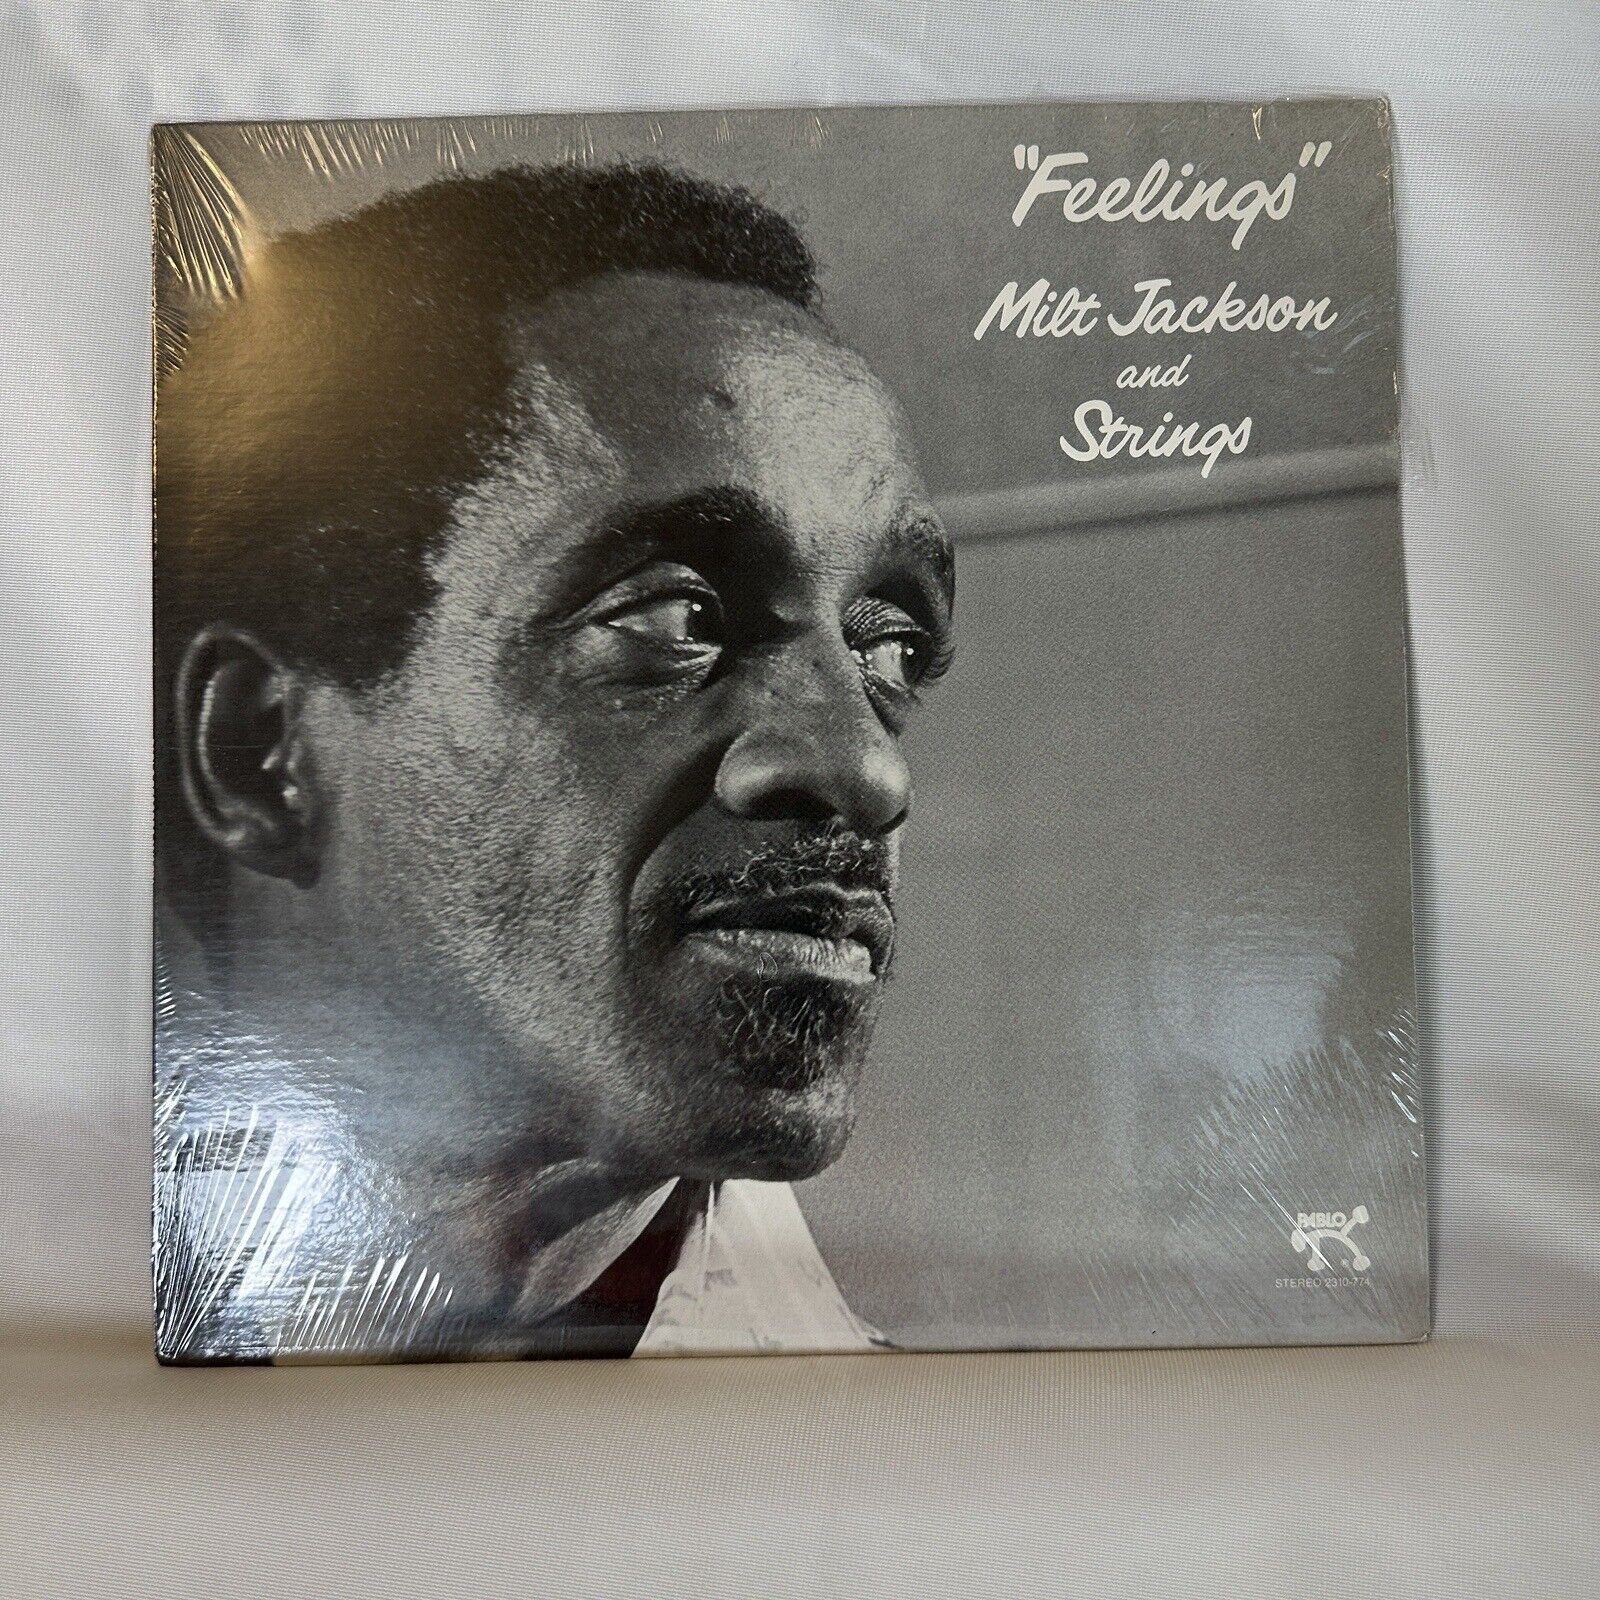 Milt Jackson and Strings Feelings. Pablo Vinyl 